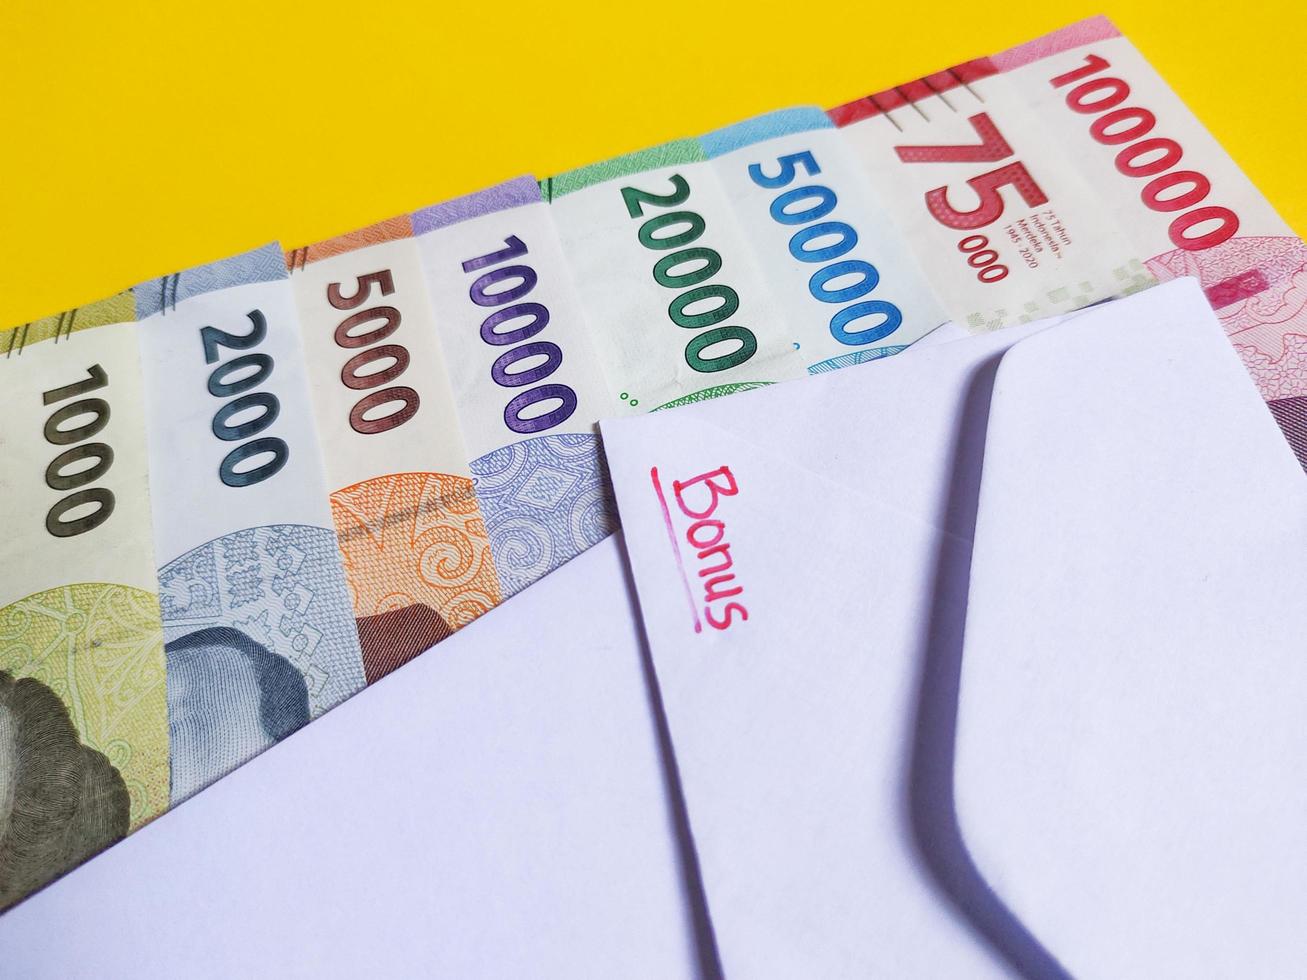 Novo notas emitido dentro 2022 a partir de Rp.1.000 para 100.000 rp. indonésio rupia moeda com uma branco envelope etiquetado bônus. Tunjangan hari raya conceito isolado em amarelo fundo foto